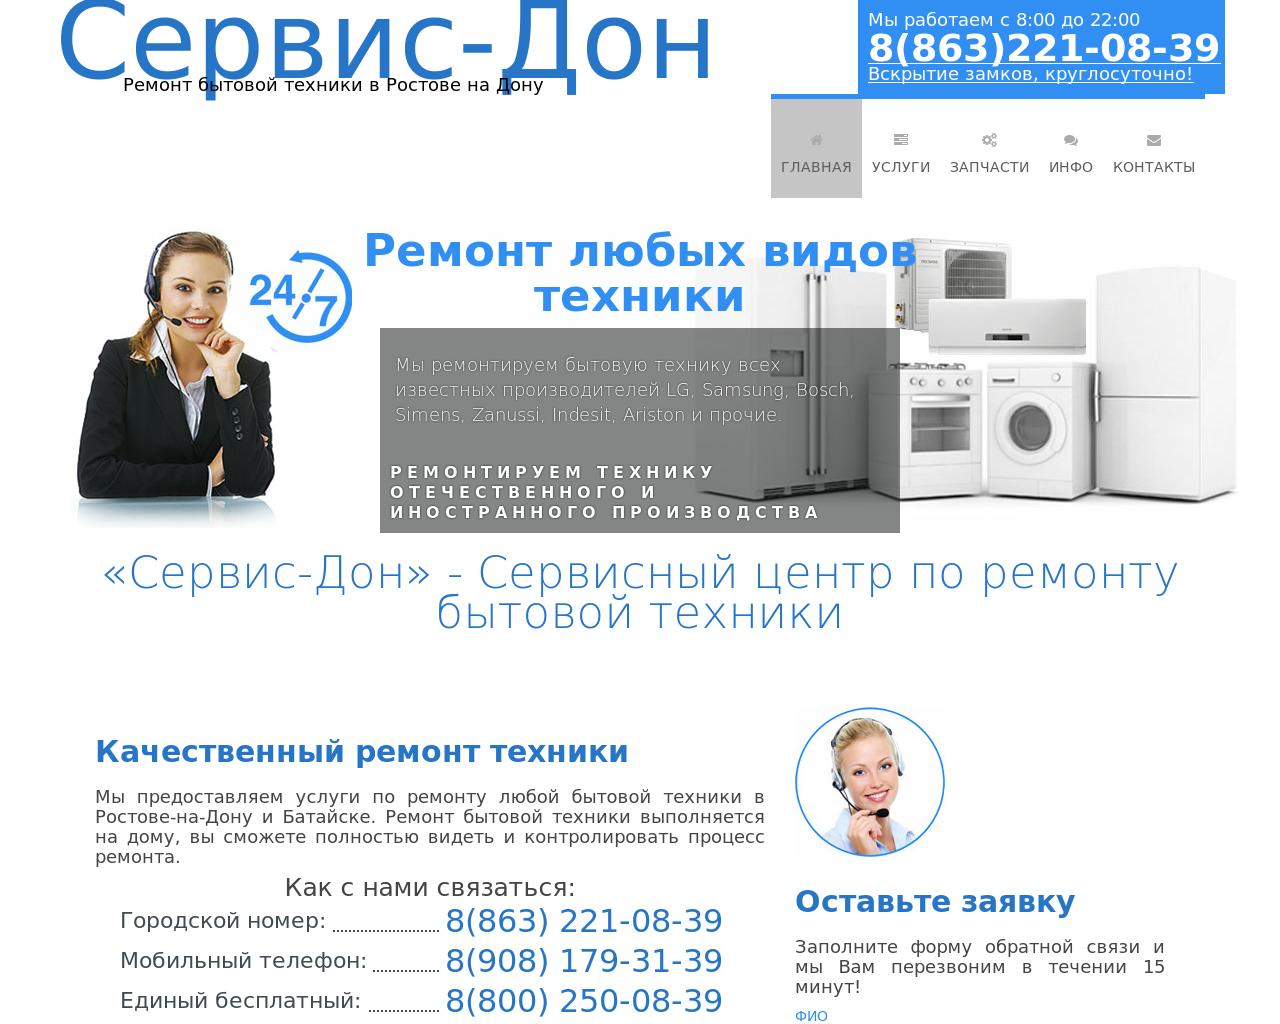 Изображение сайта servis-don.ru в разрешении 1280x1024